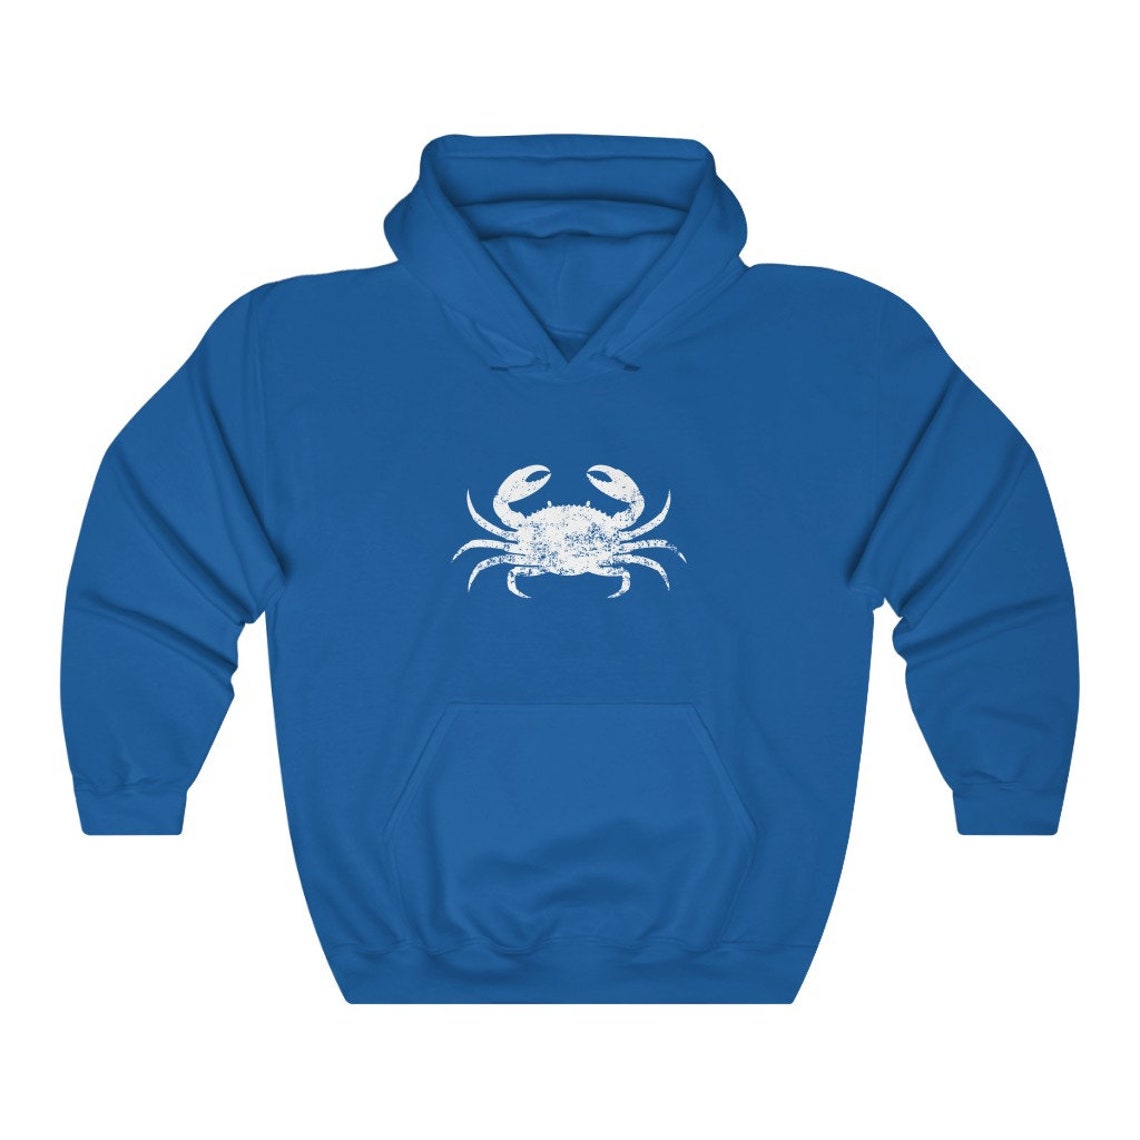 Crab Hoodie Crab Boho Sweatshirt Maryland Hoodie Gift - Etsy